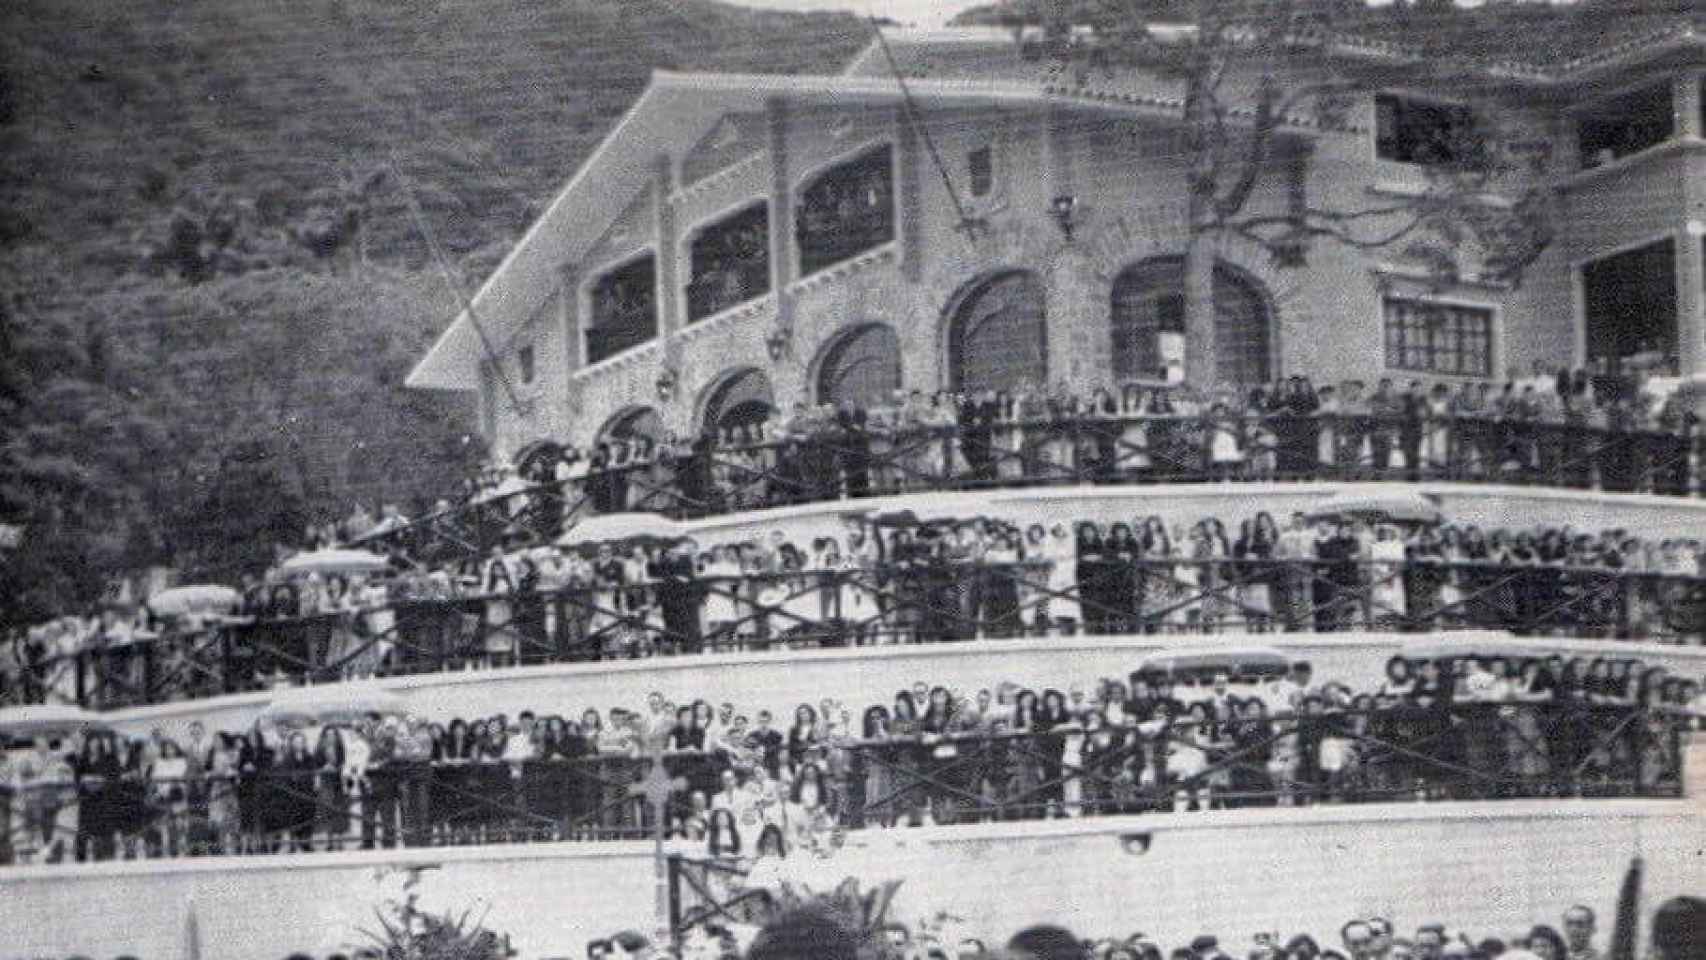 Inauguración del Centro Vasco de Caracas, con el 'lehendakari' Aguirre presidiendo el acto en el caserío de El Paraíso.